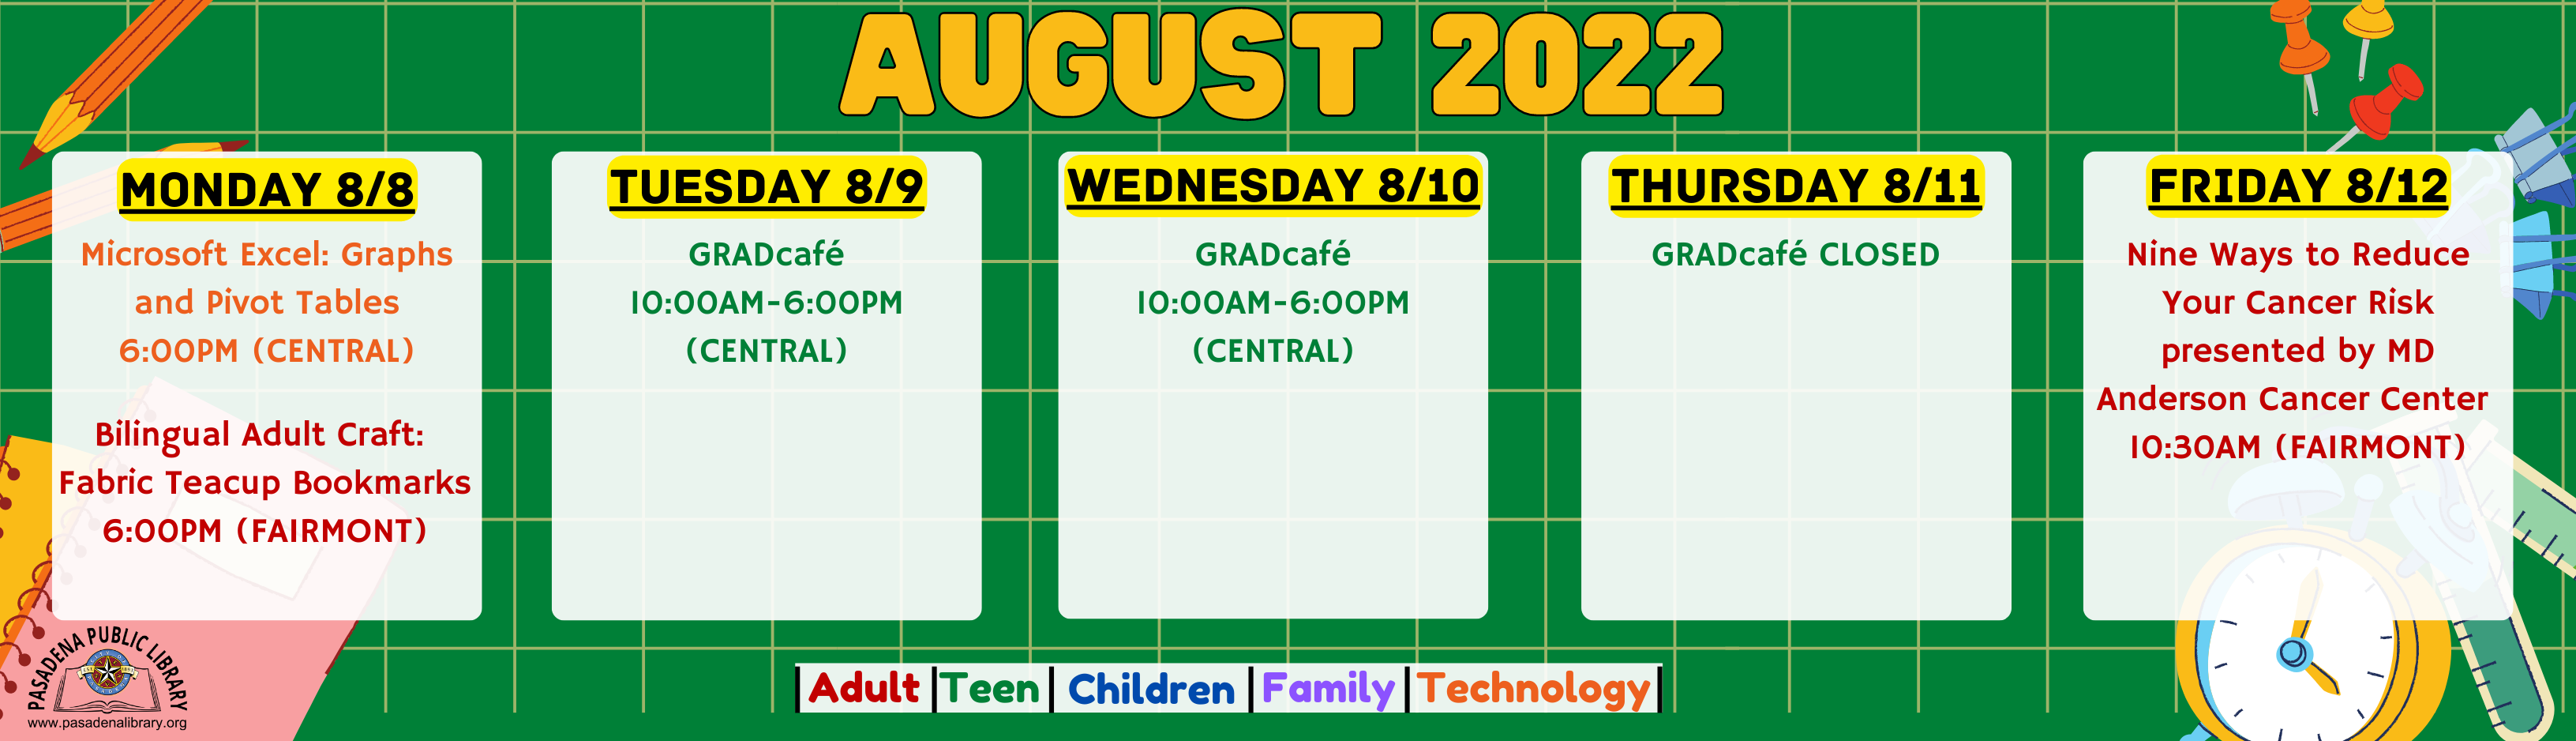 Week of August 8, 2022 Library Programs